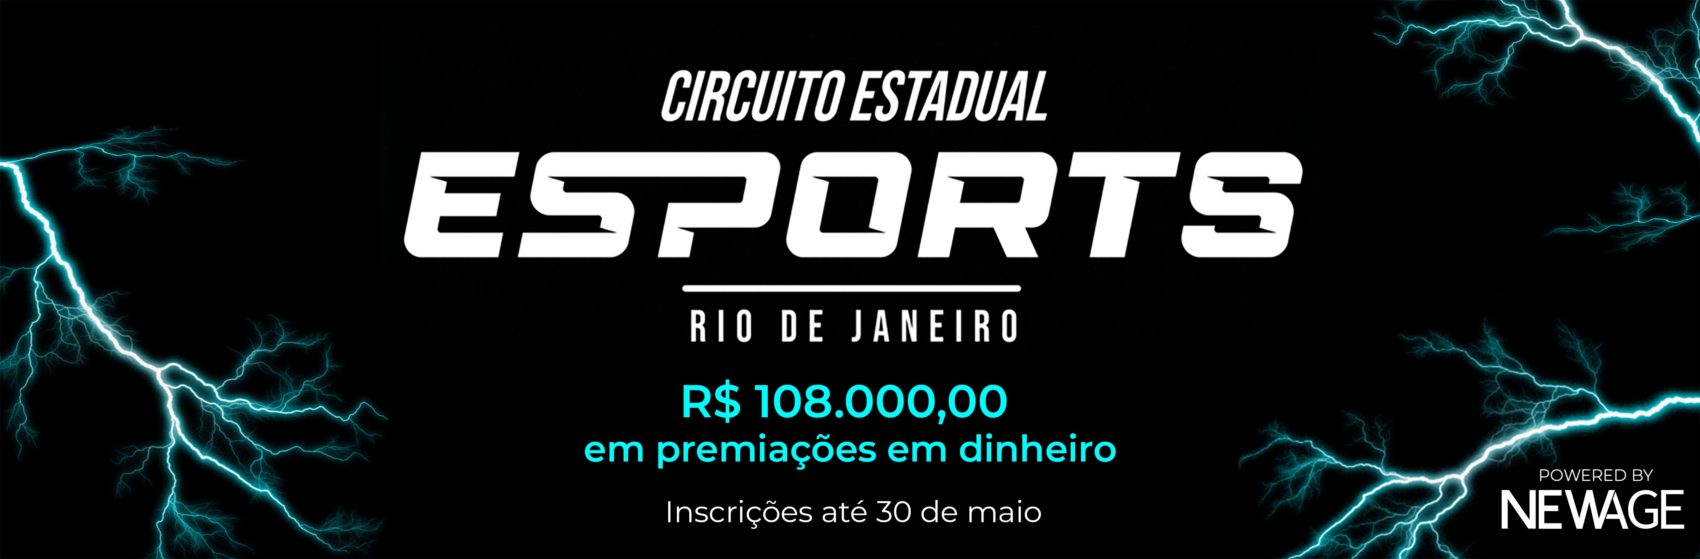 Circuito Estadual de eSports do Rio - inscrições até 30 de maio!